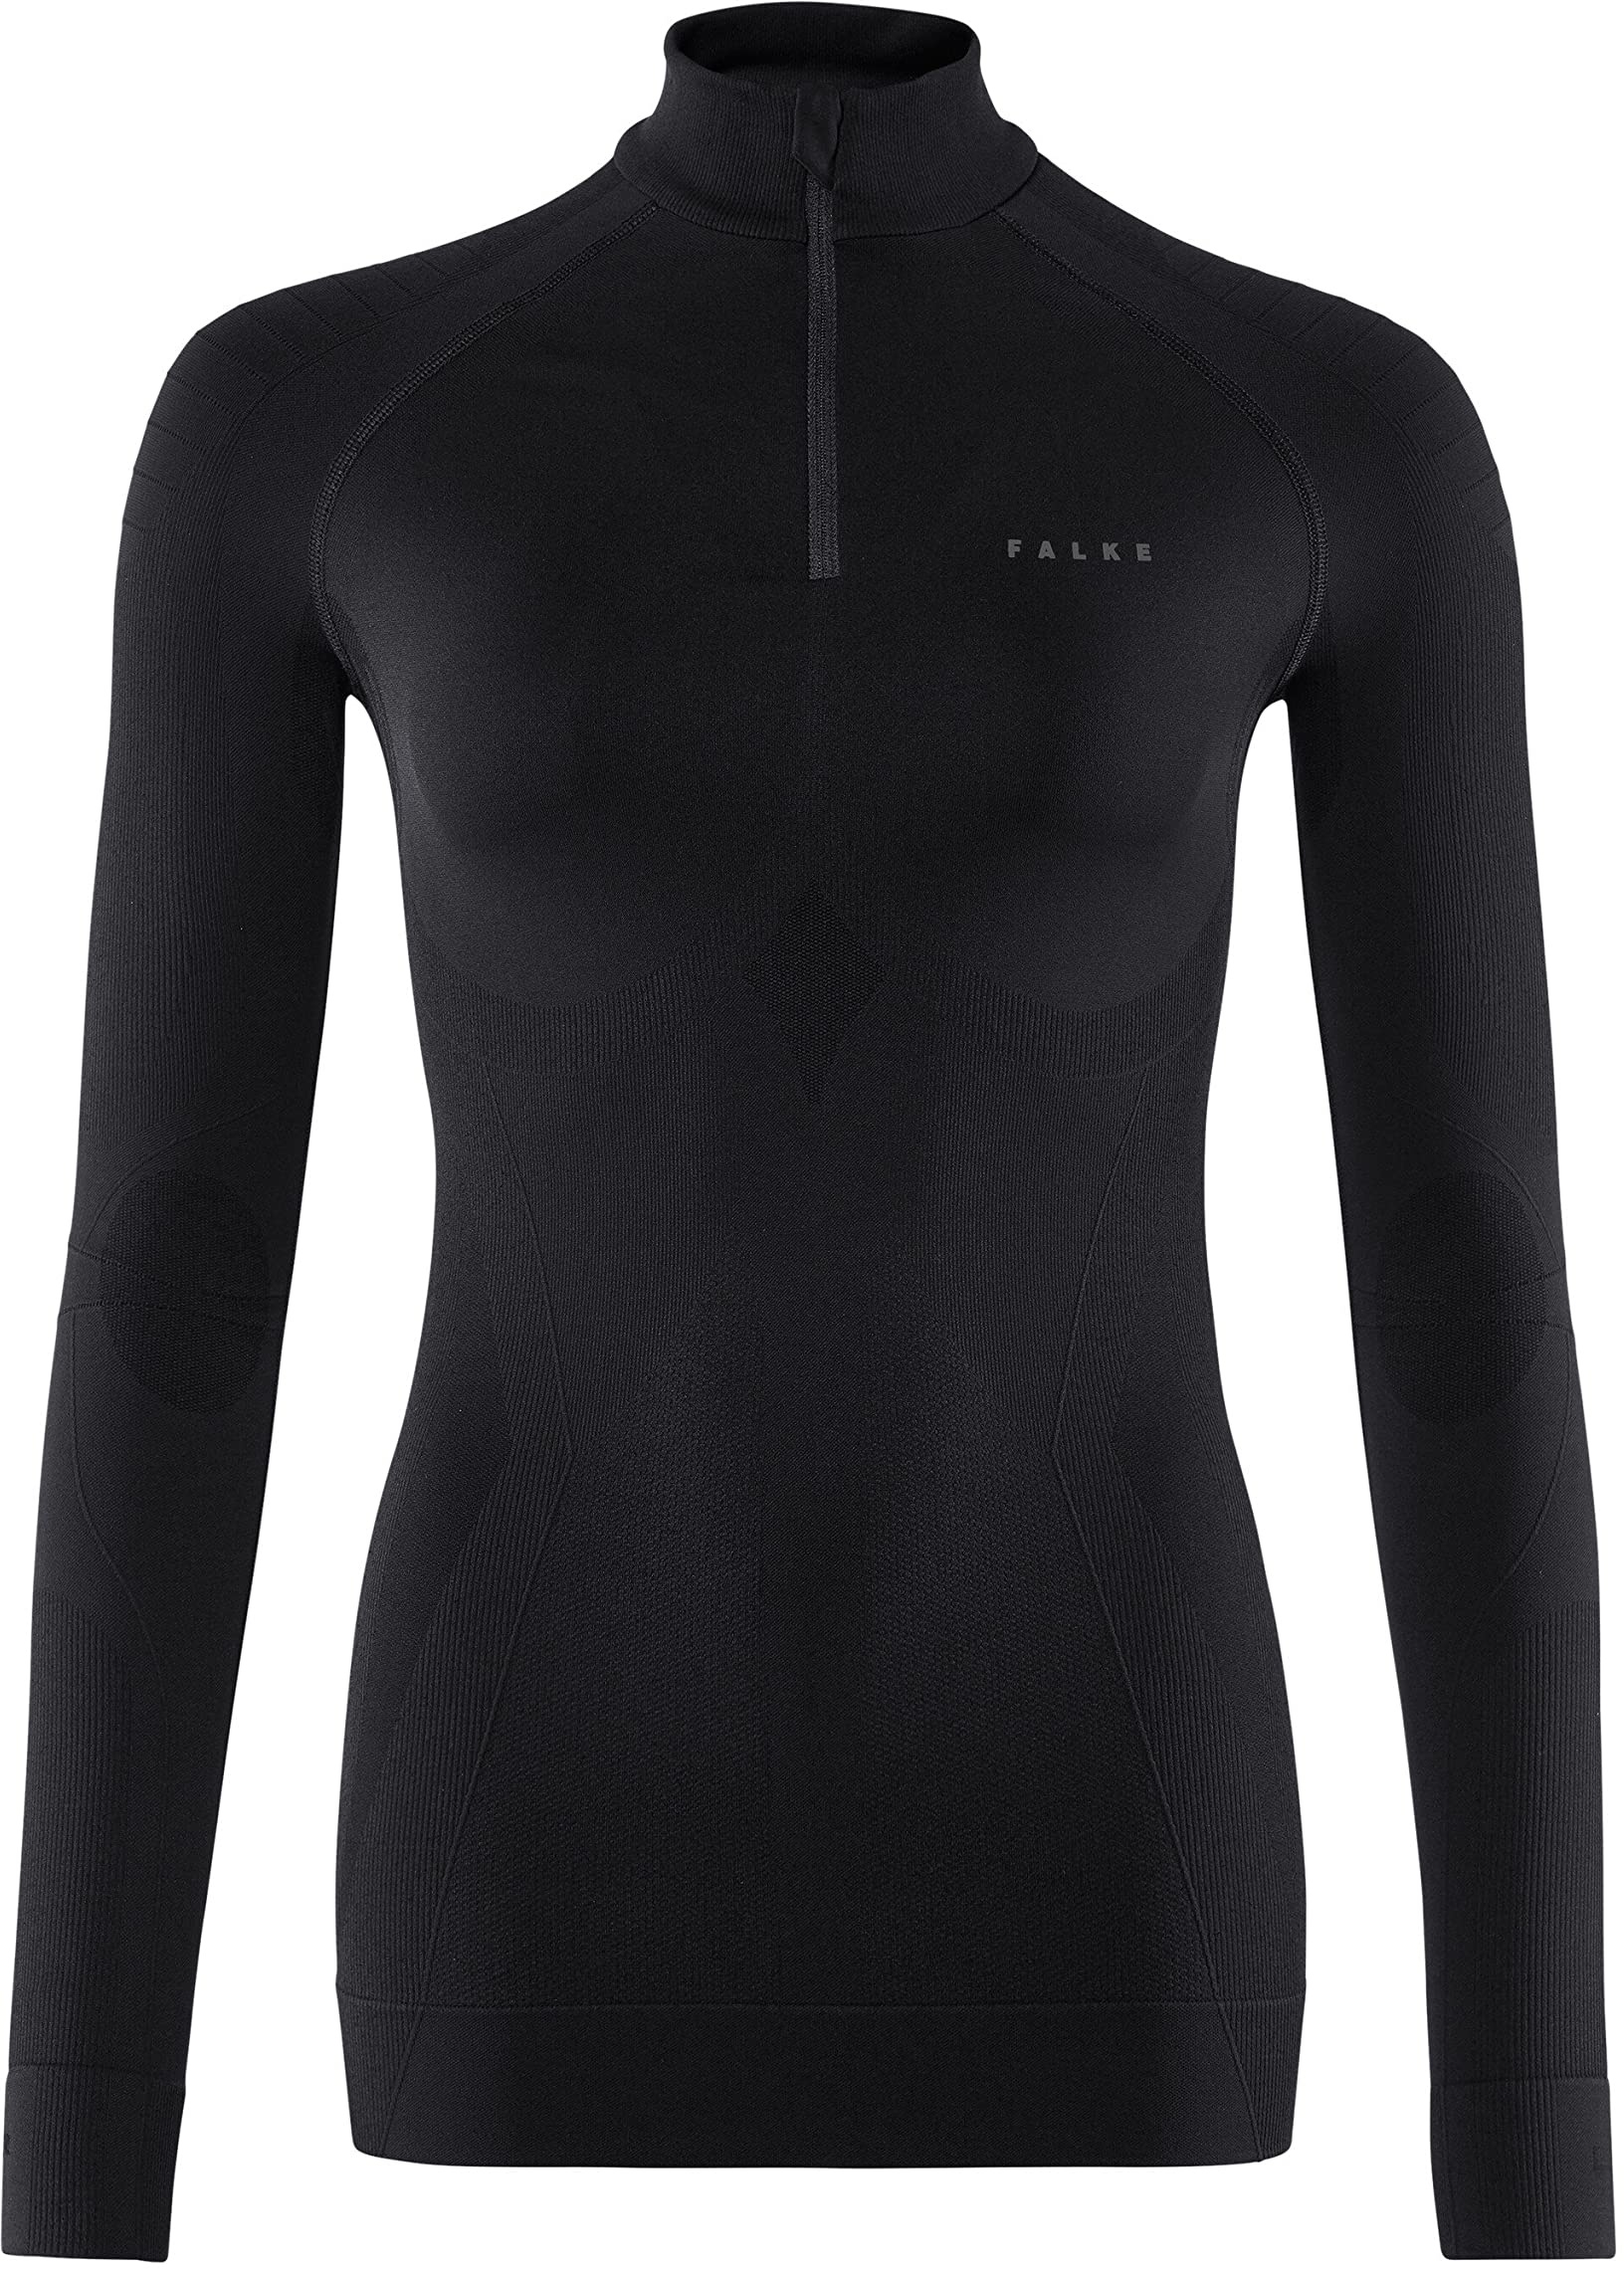 FALKE Damen Maximale warme rits W L/S Baselayer Shirt, Schwarz (Black 3000), M EU